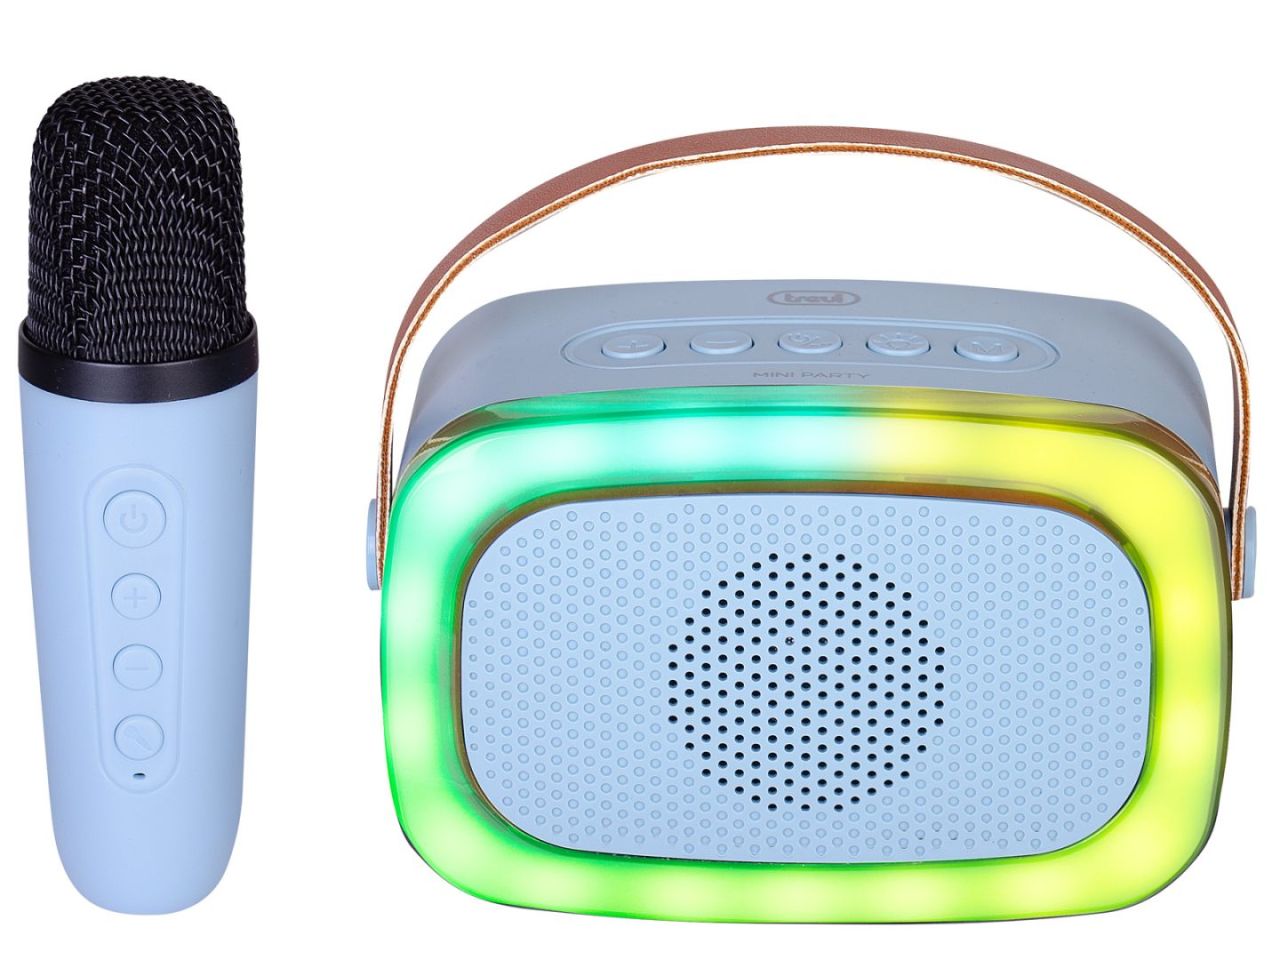 Trevi XR8A01 Mini Bluetooth Karaoke Party Speaker for Kids Blue